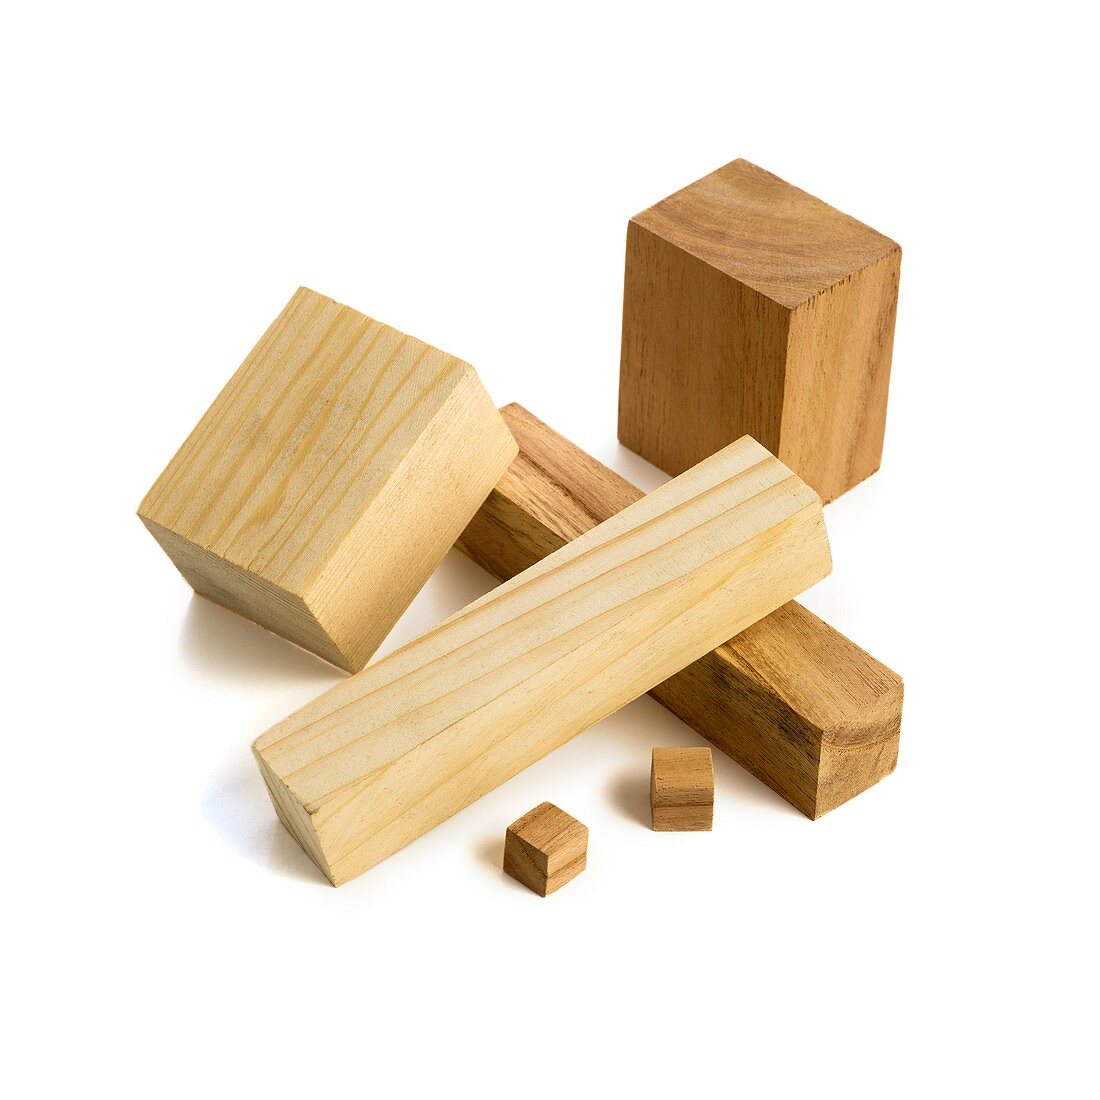 Variety of wooden blocks